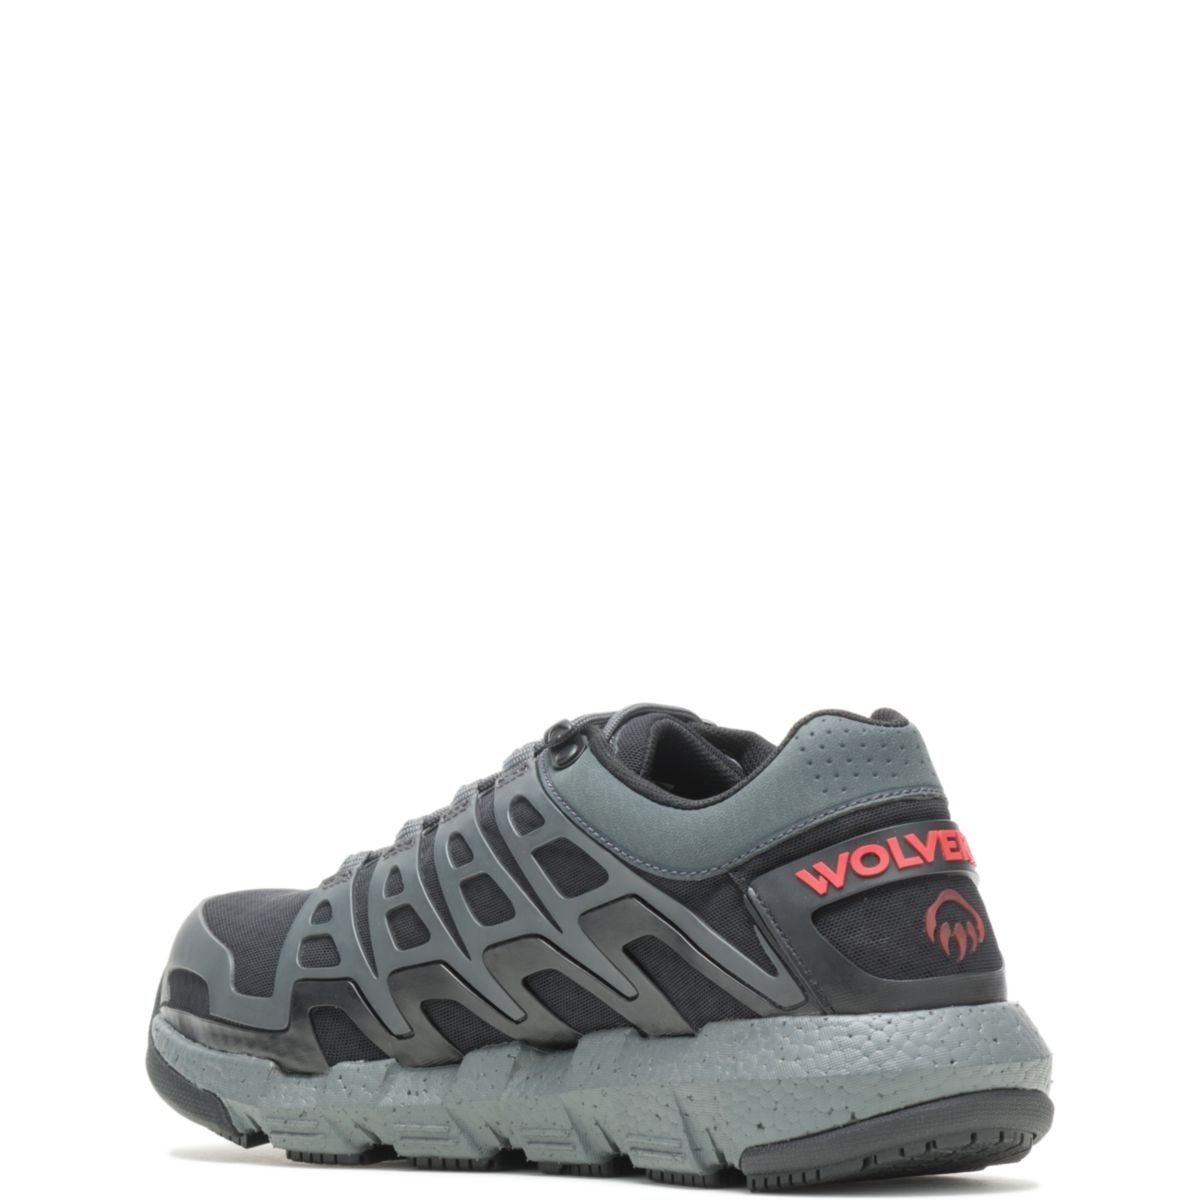 WOLVERINE Men's Rev Vent UltraSpringâ¢ DuraShocksÂ® CarbonMAXÂ® Composite Toe Work Shoe Charcoal - W211016 CHARCOAL - CHARCOAL, 12